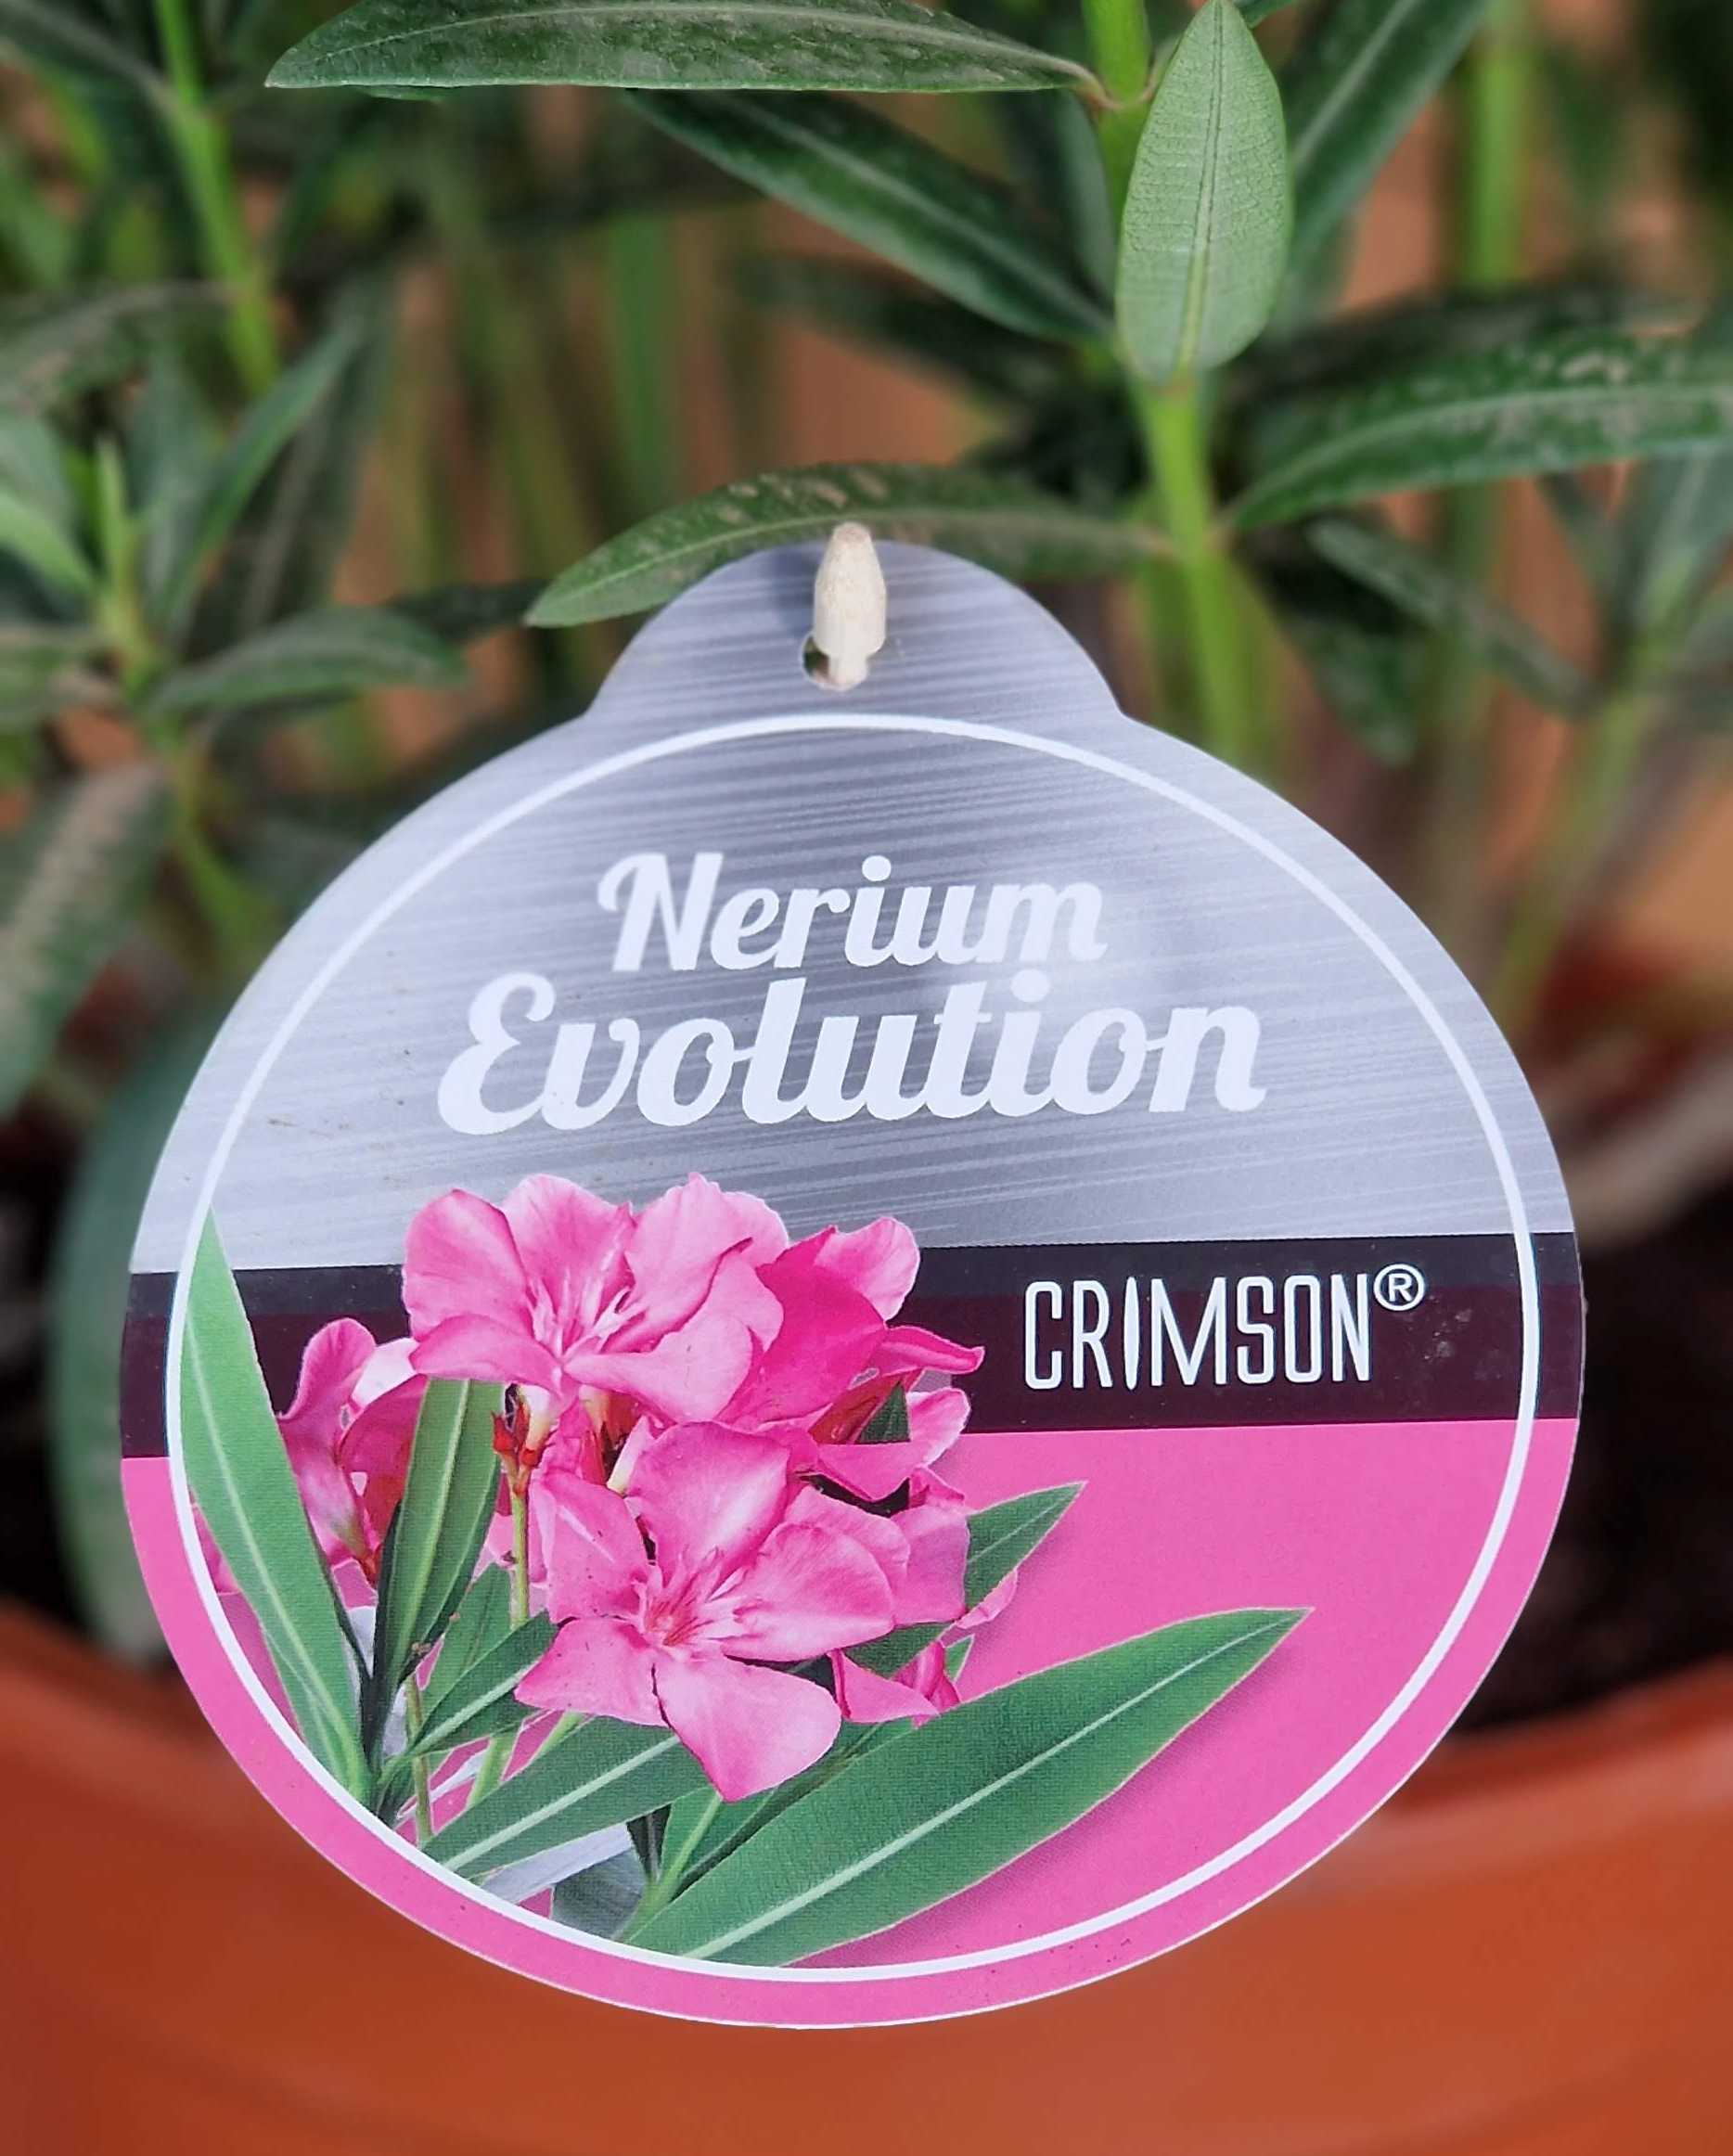 Rosa Oleander - Nerium Evolution "Crimson" - [MEZZO]